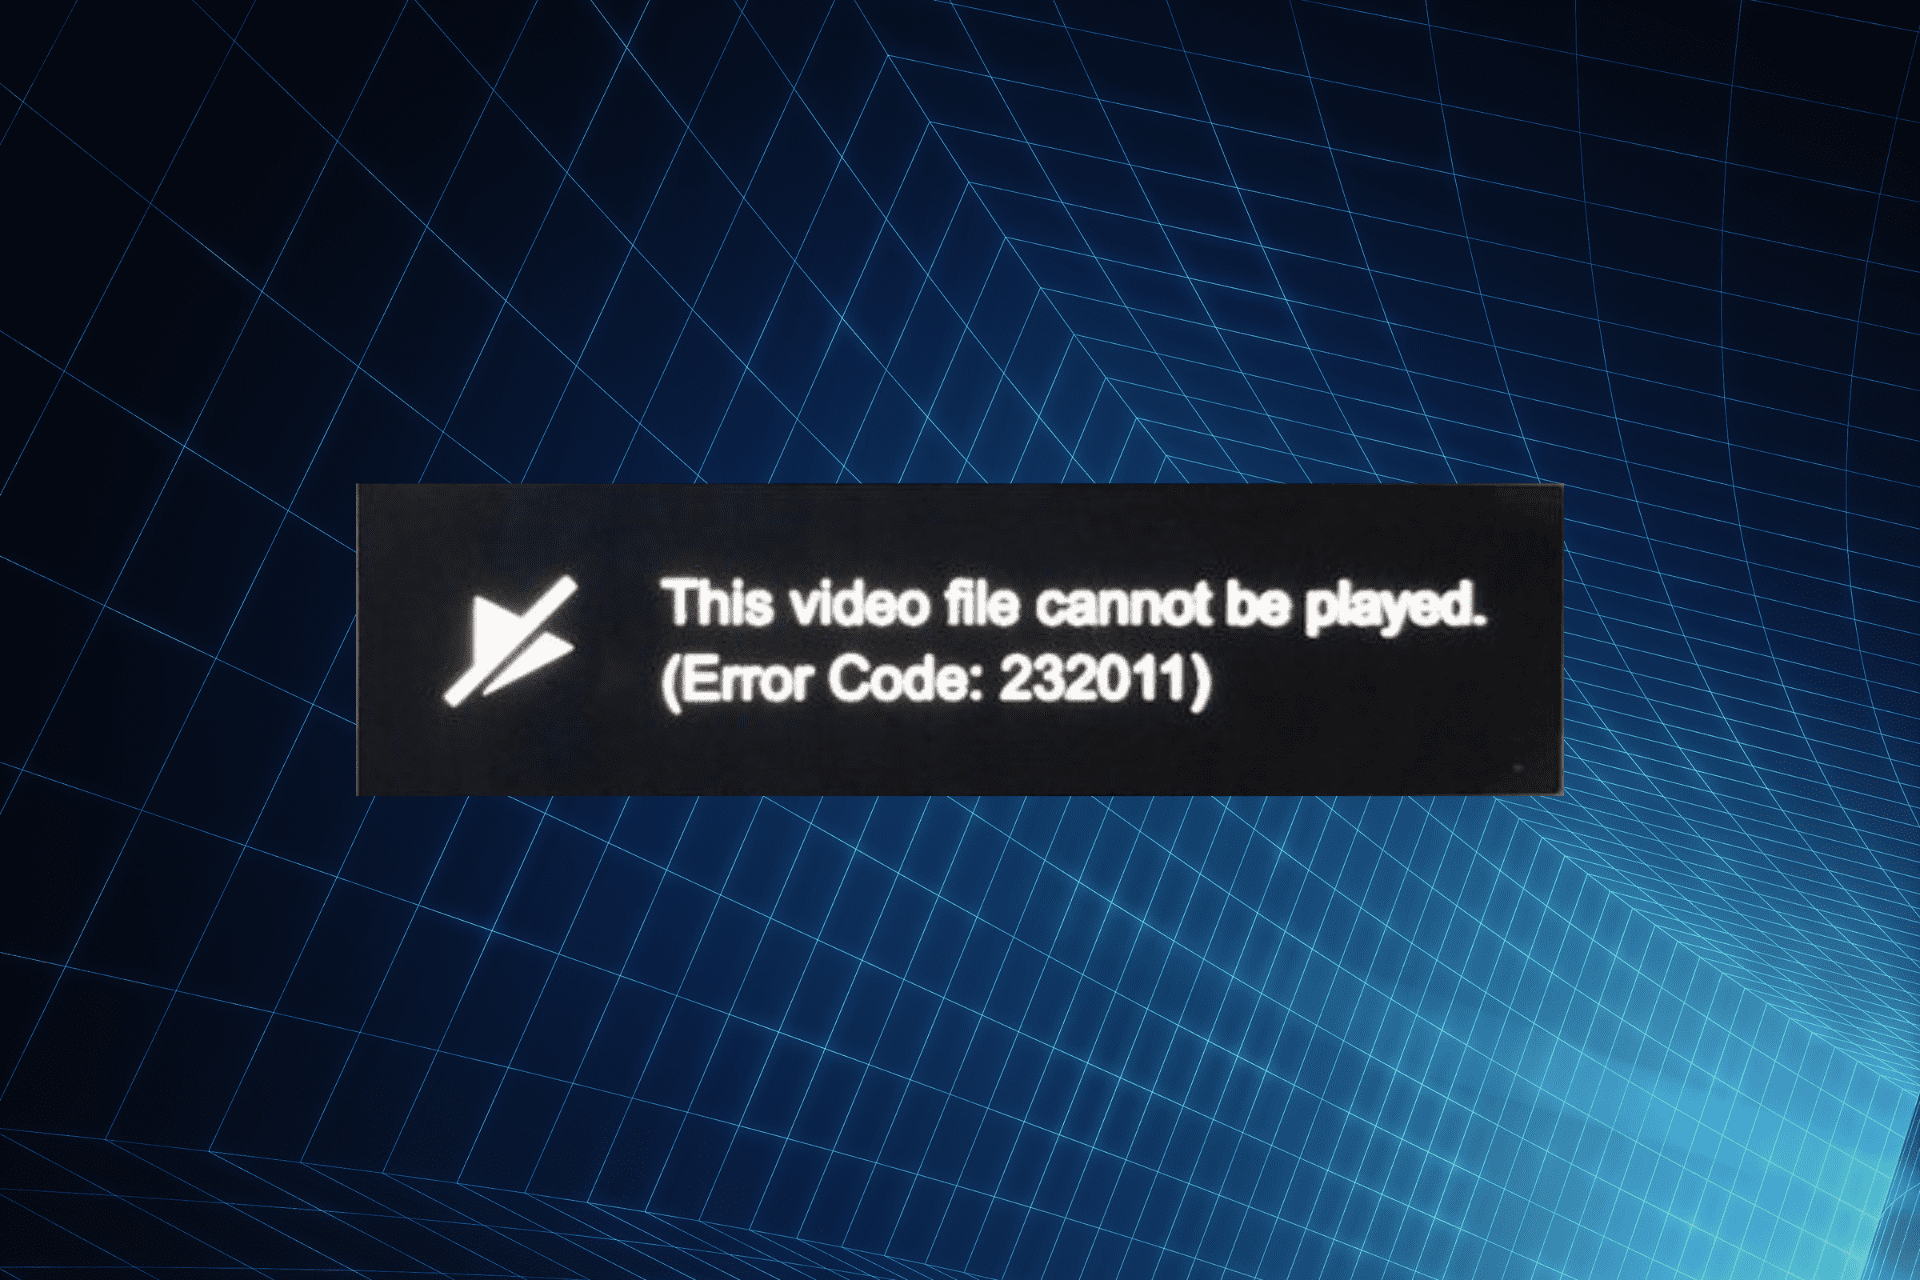 Sửa lỗi không phát được tệp video này. (mã lỗi 232011)